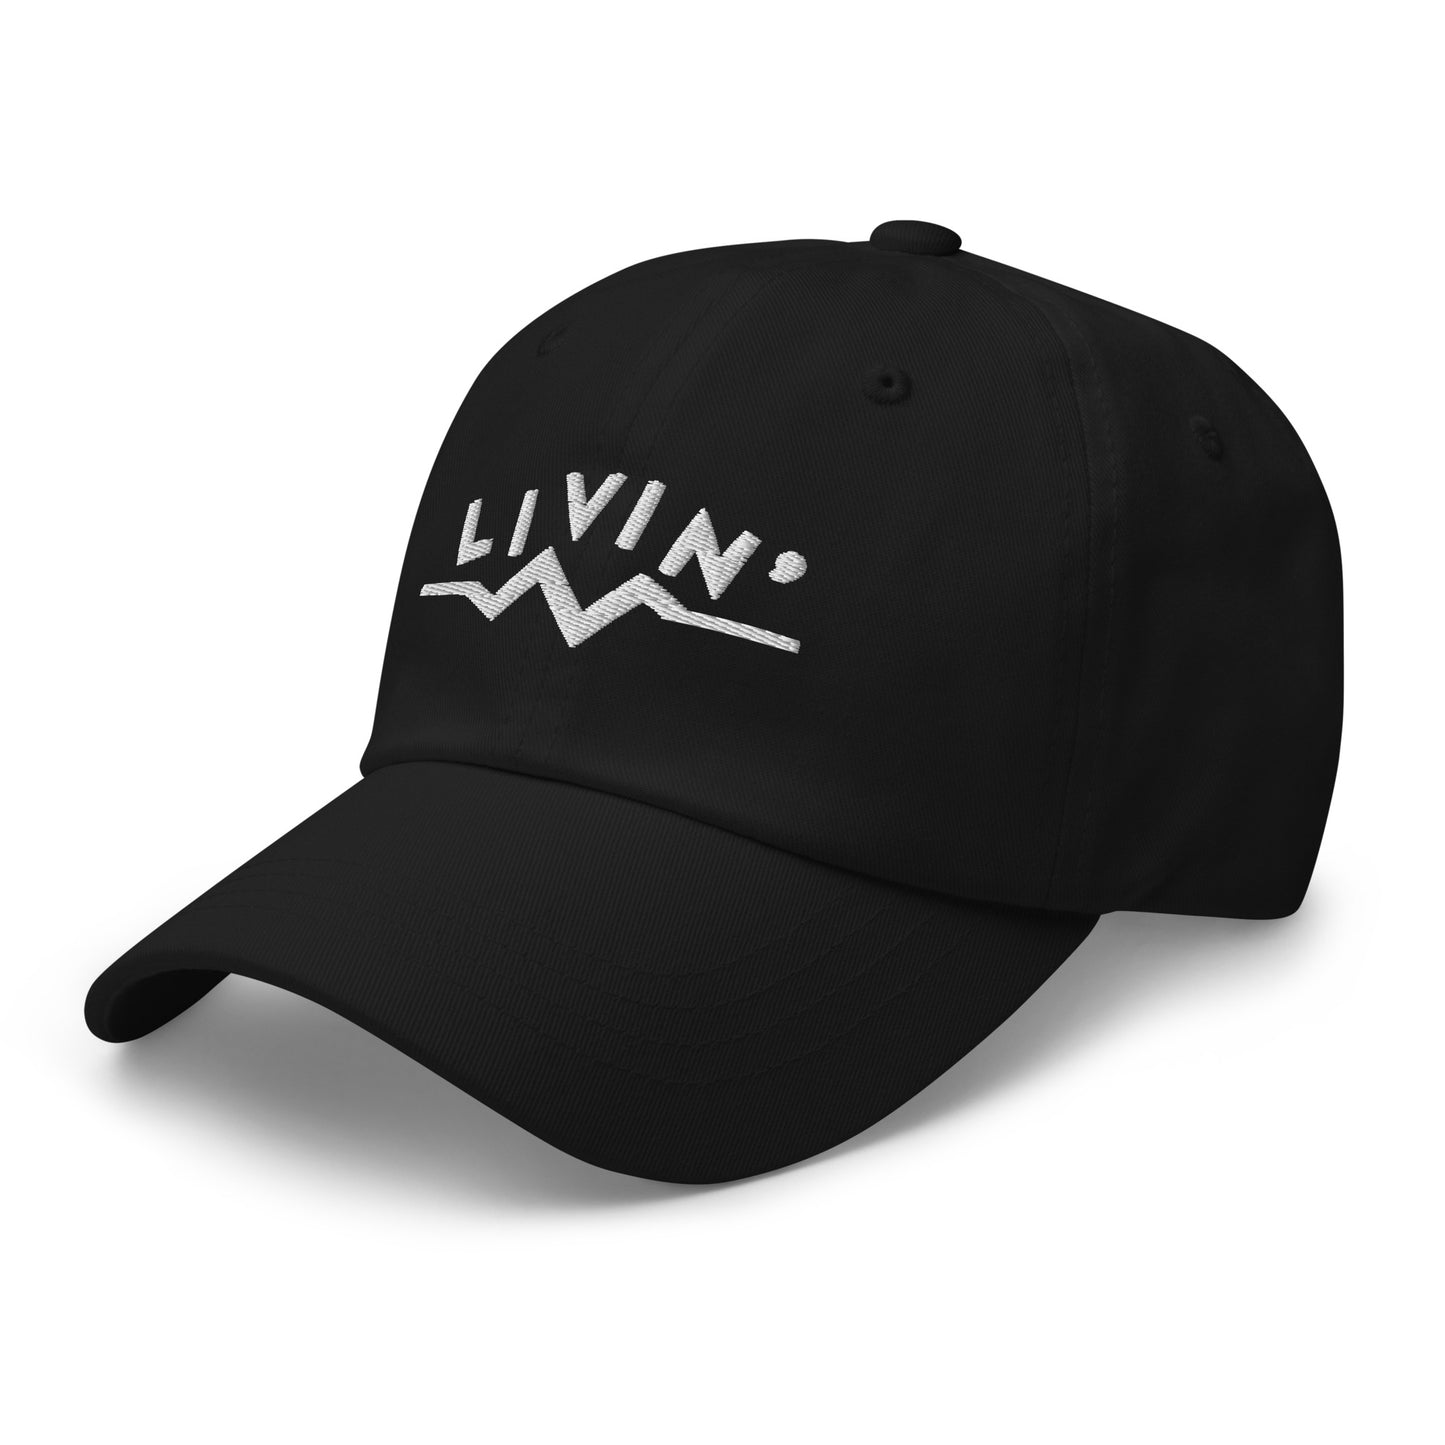 "Livin" Cap